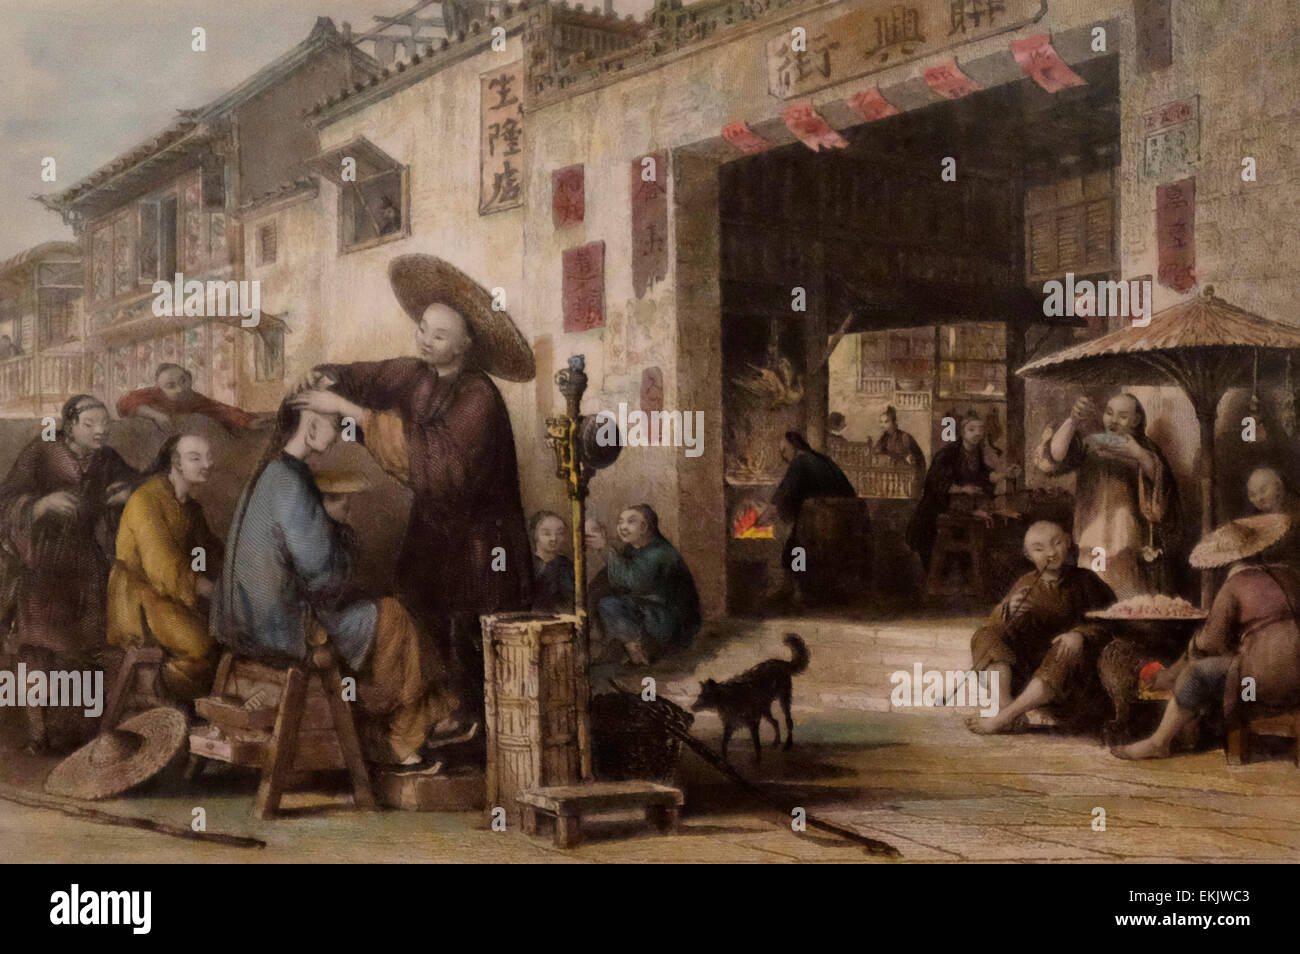 Un salon de coiffure itinérant, 19e siècle Chine Banque D'Images